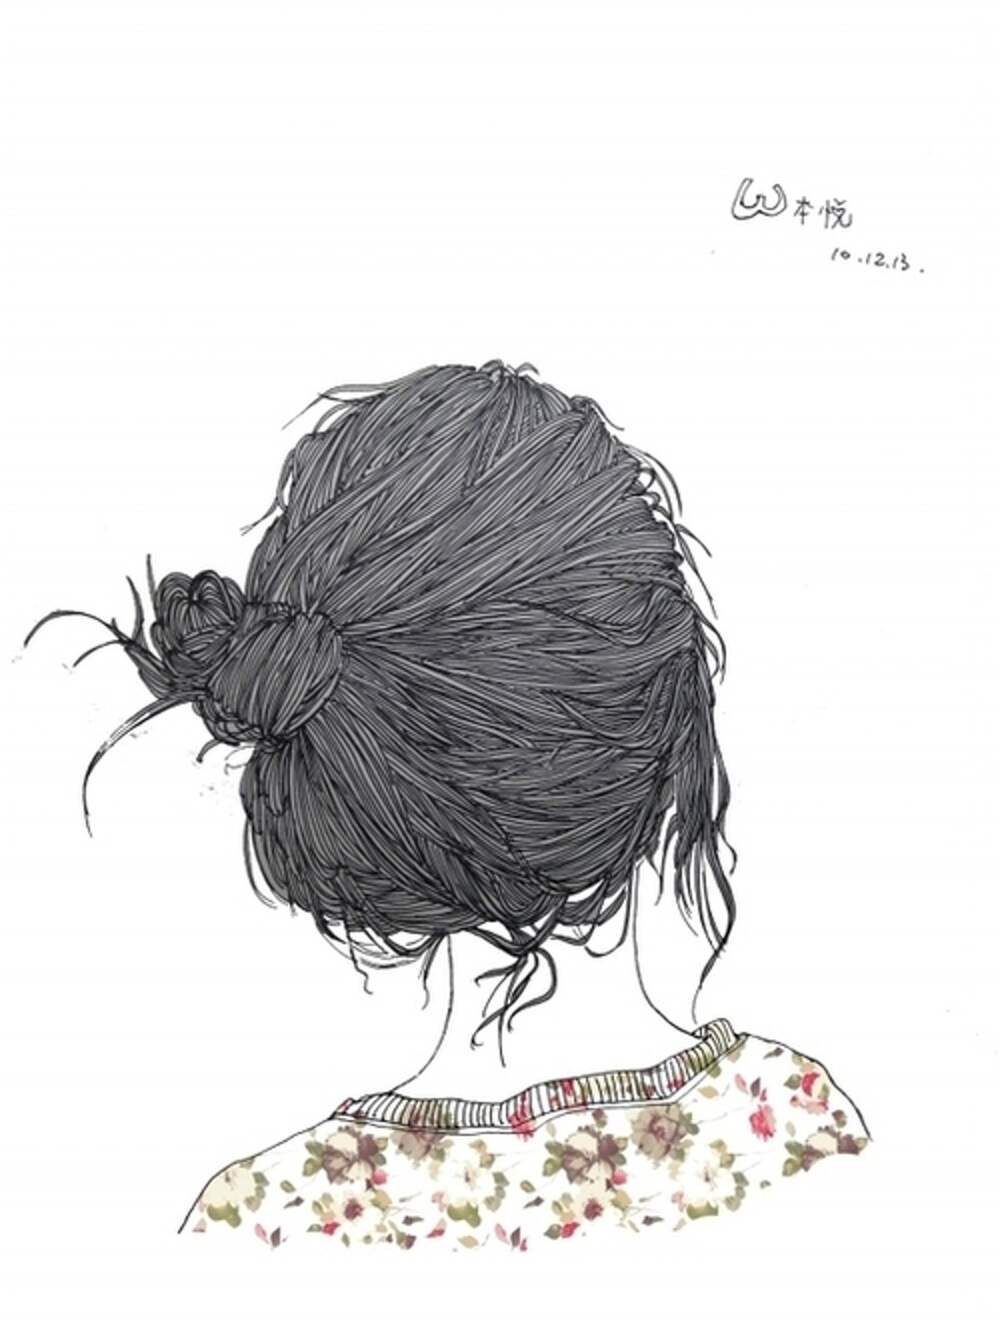 Нарисованная девушка с пучком на голове